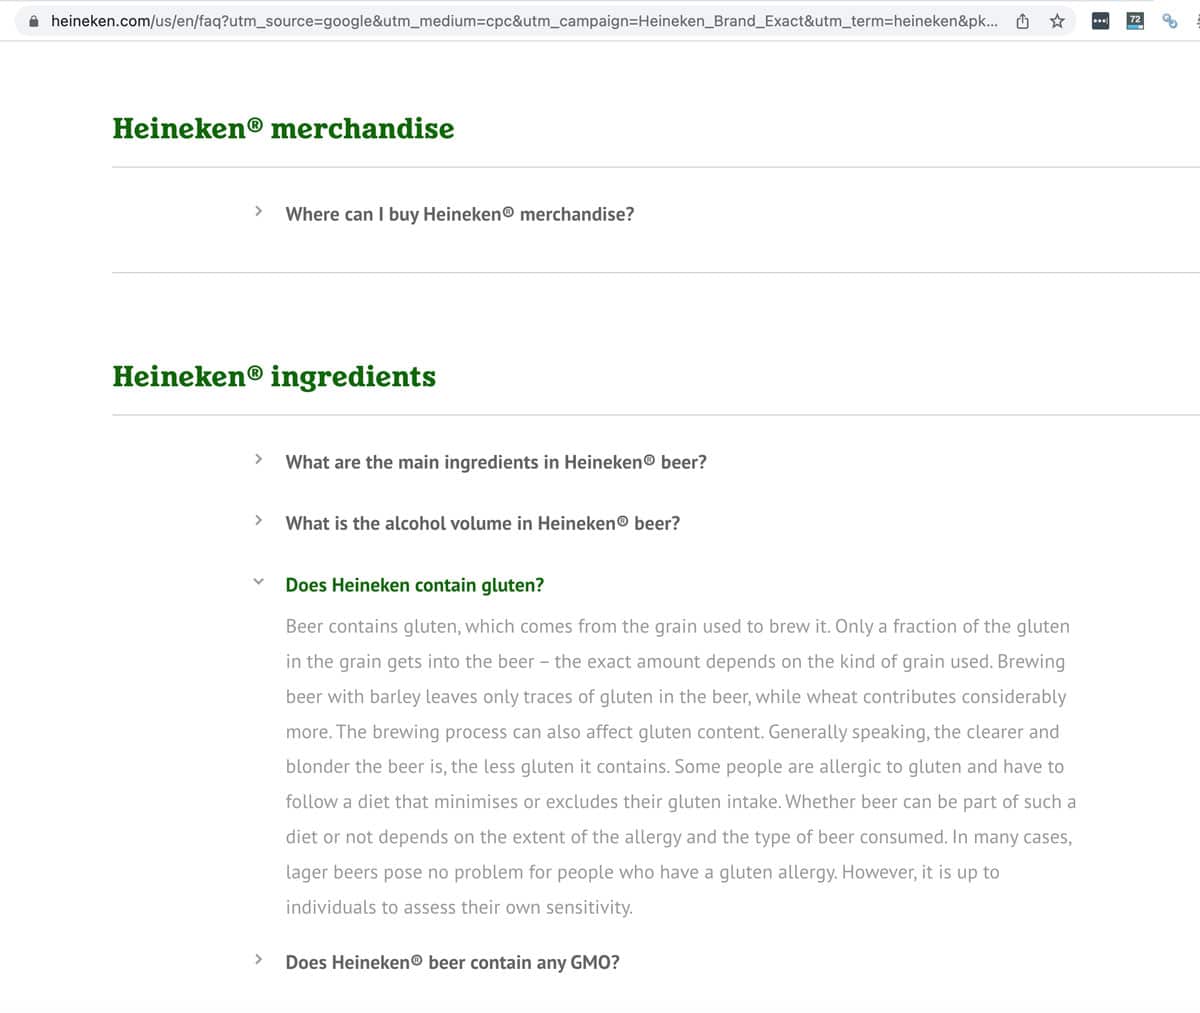 Heineken allergy statement from their website.